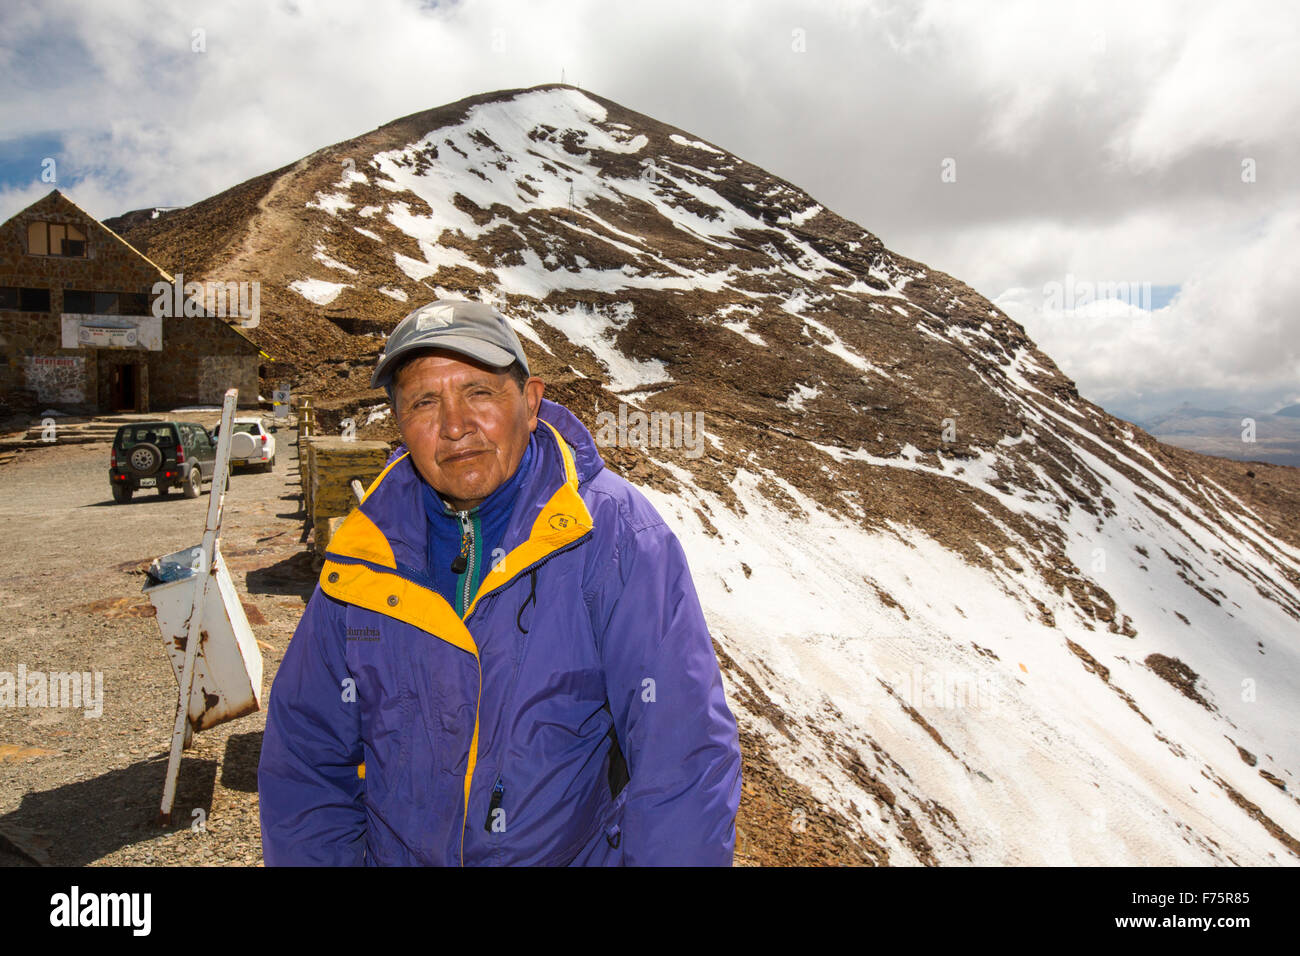 Le pic de Chacaltaya (5,395m), qui jusqu'en 2009 avait un glacier qui a soutenu les mondes plus téléskis à plus de 17 000 pieds. Le glacier enfin complètement disparu en 2009 en raison du changement climatique sur la fusion. La pente à l'arrière-plan est l'endroit où le glacier et ski run l'habitude d'être. Dans l'avant-plan est Adolfo Mendoza, utilisé pour s'occuper de la cabane de ski et grimpe encore le pic chaque jour, d'ouvrir le club de ski hut aux touristes. Banque D'Images